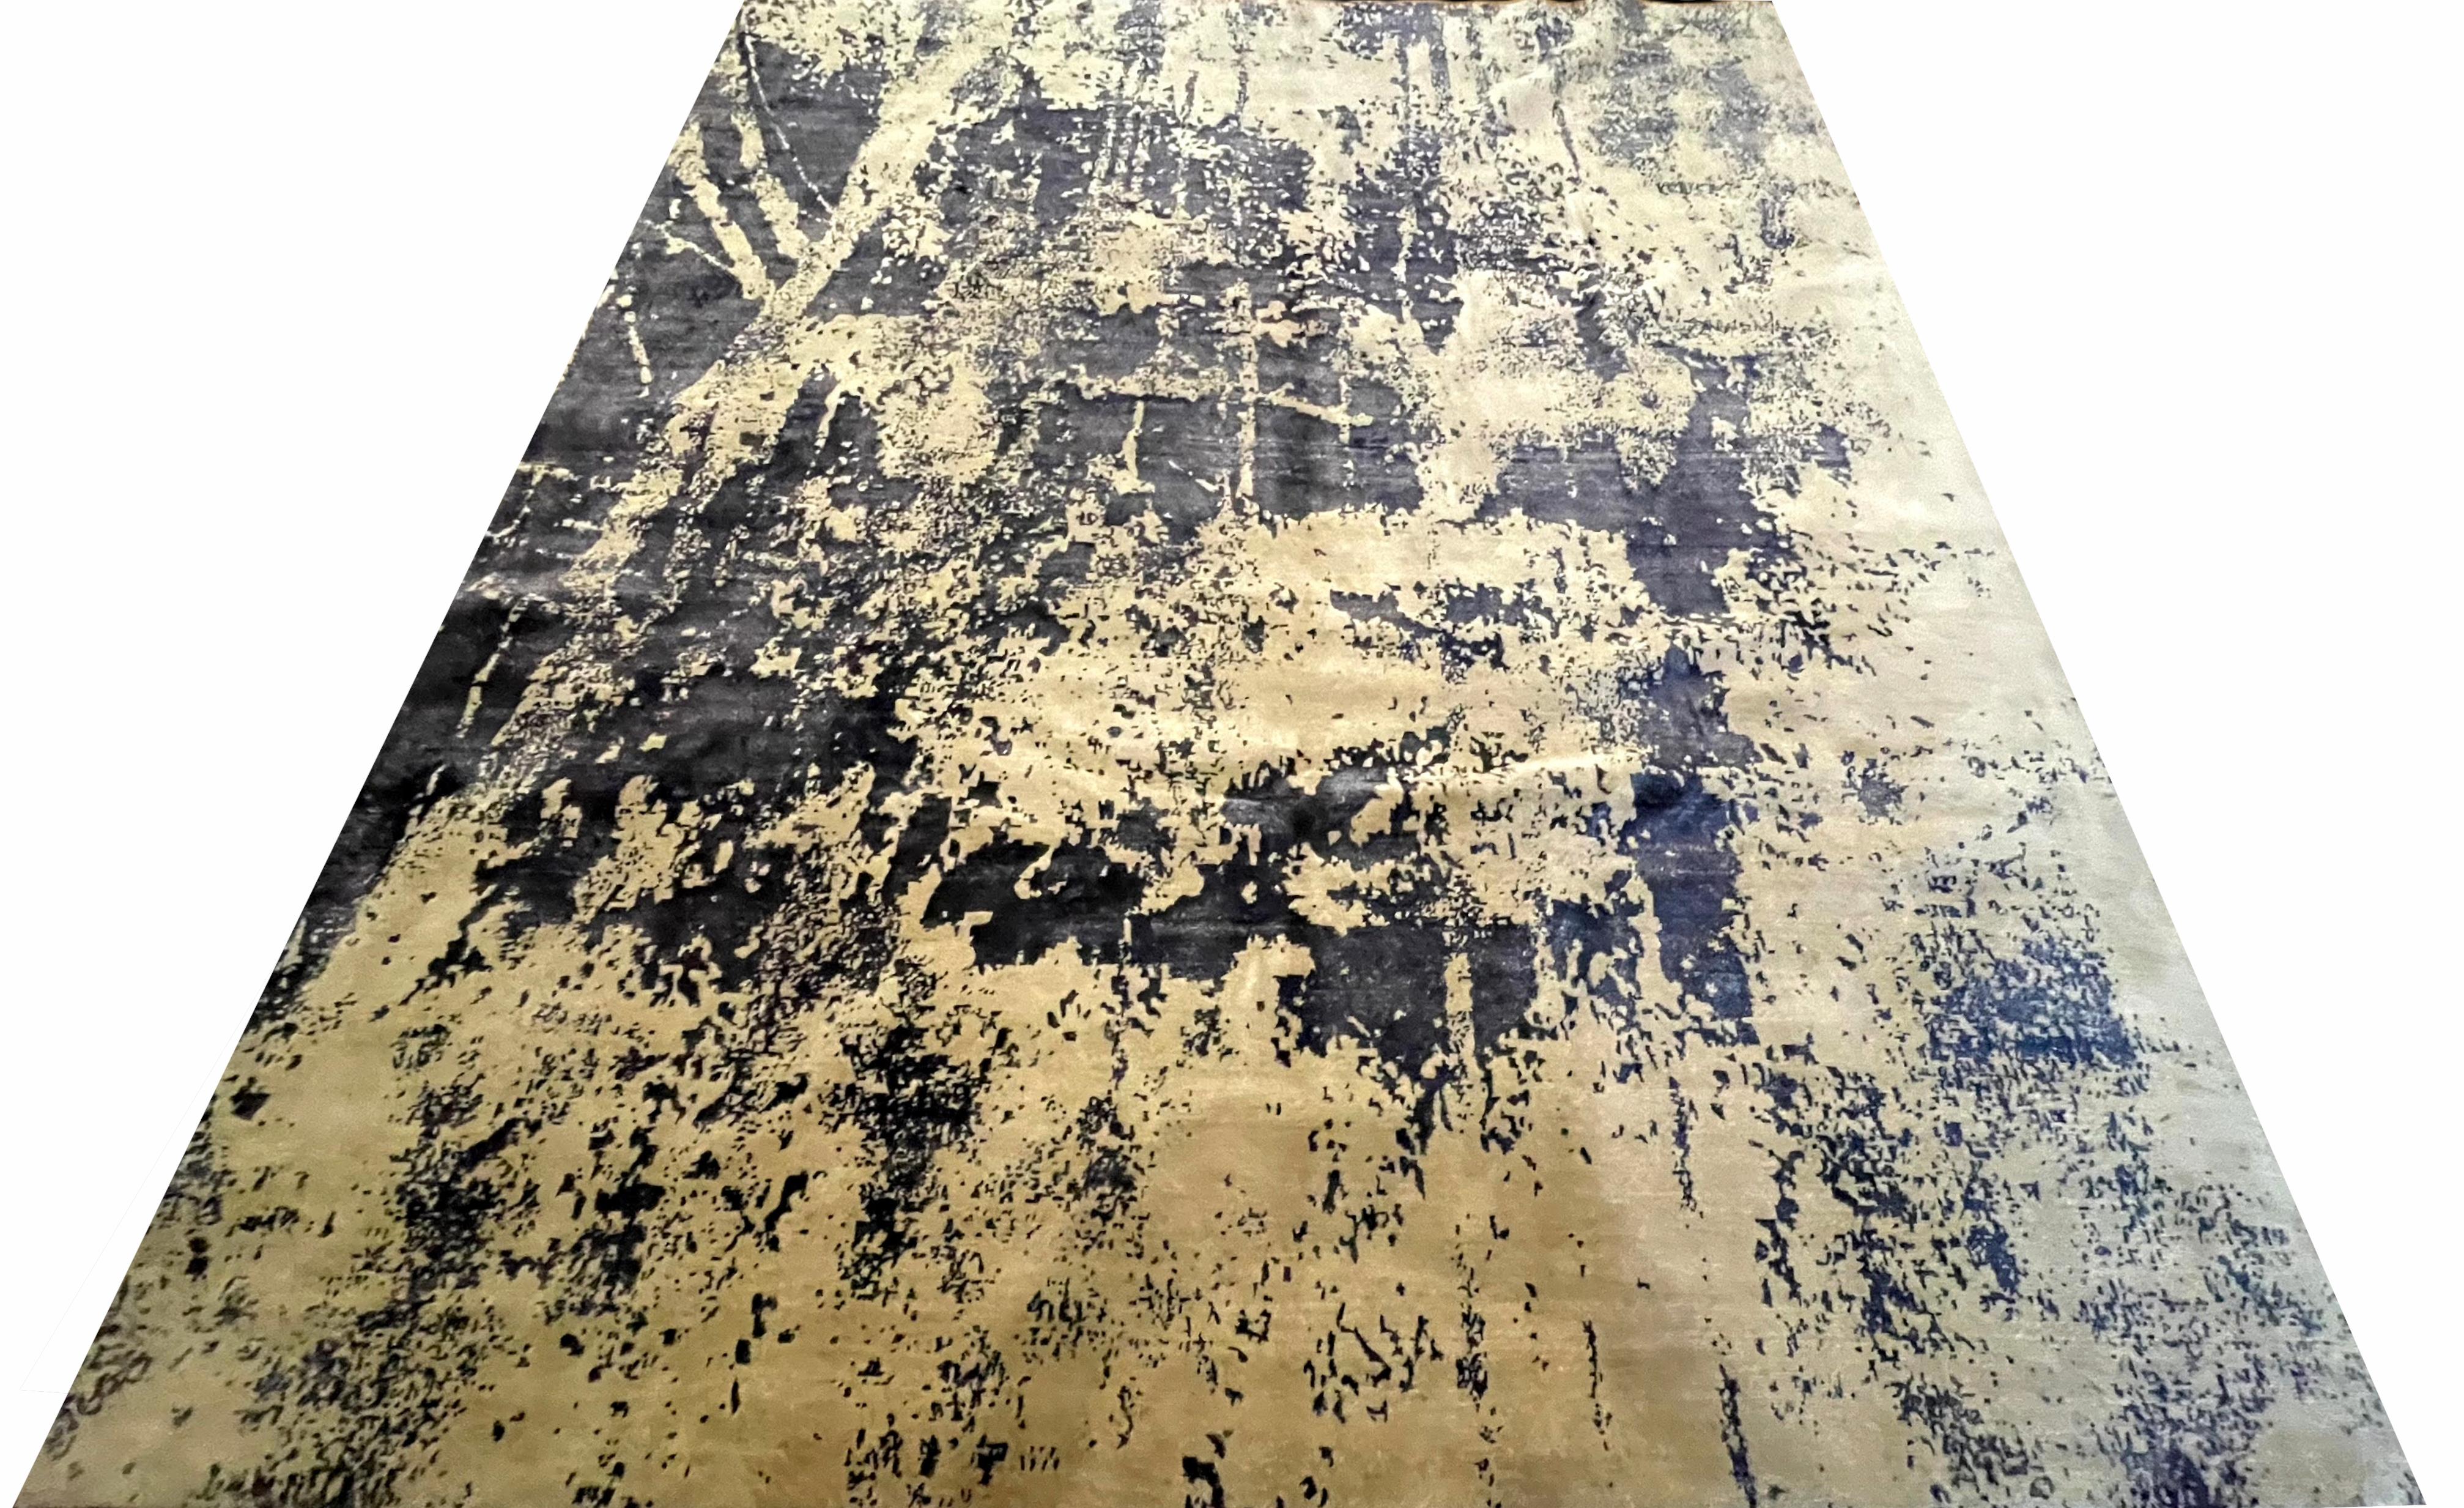 Dieser abstrakte Design Teppich hat die ID 529 und ist aus unserer Master-Loom Kollektion. Das Format ist 250cm x 300cm, handgeknüpft und besteht aus einer einzigartigen Mischung aus hochwertiger Wolle und Bambus-Seide, deren natürlicher Glanz